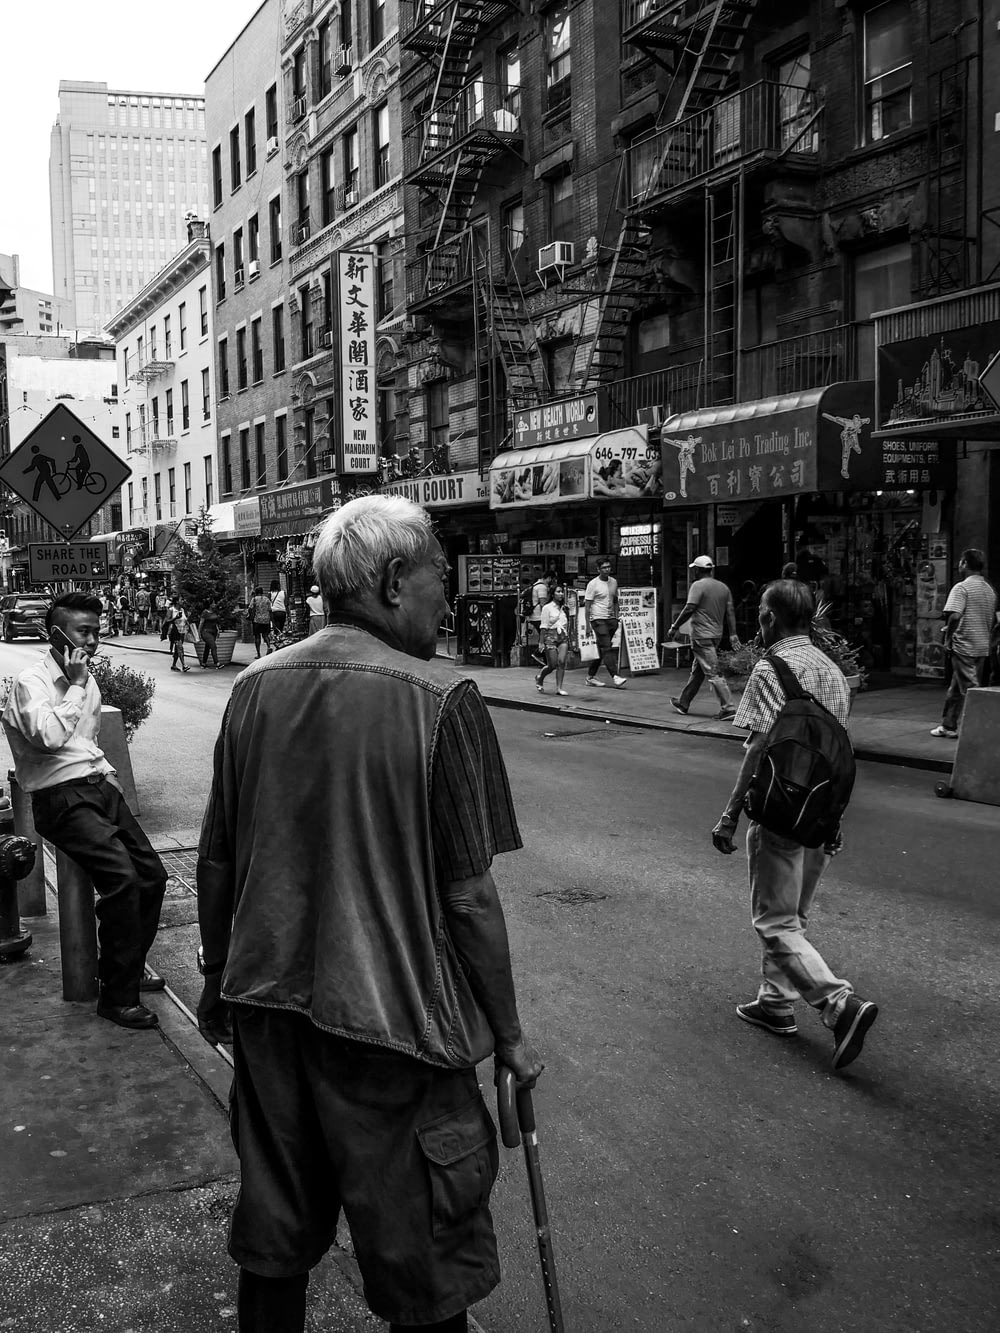 fotografia em tons de cinza de pessoas caminhando perto da rua